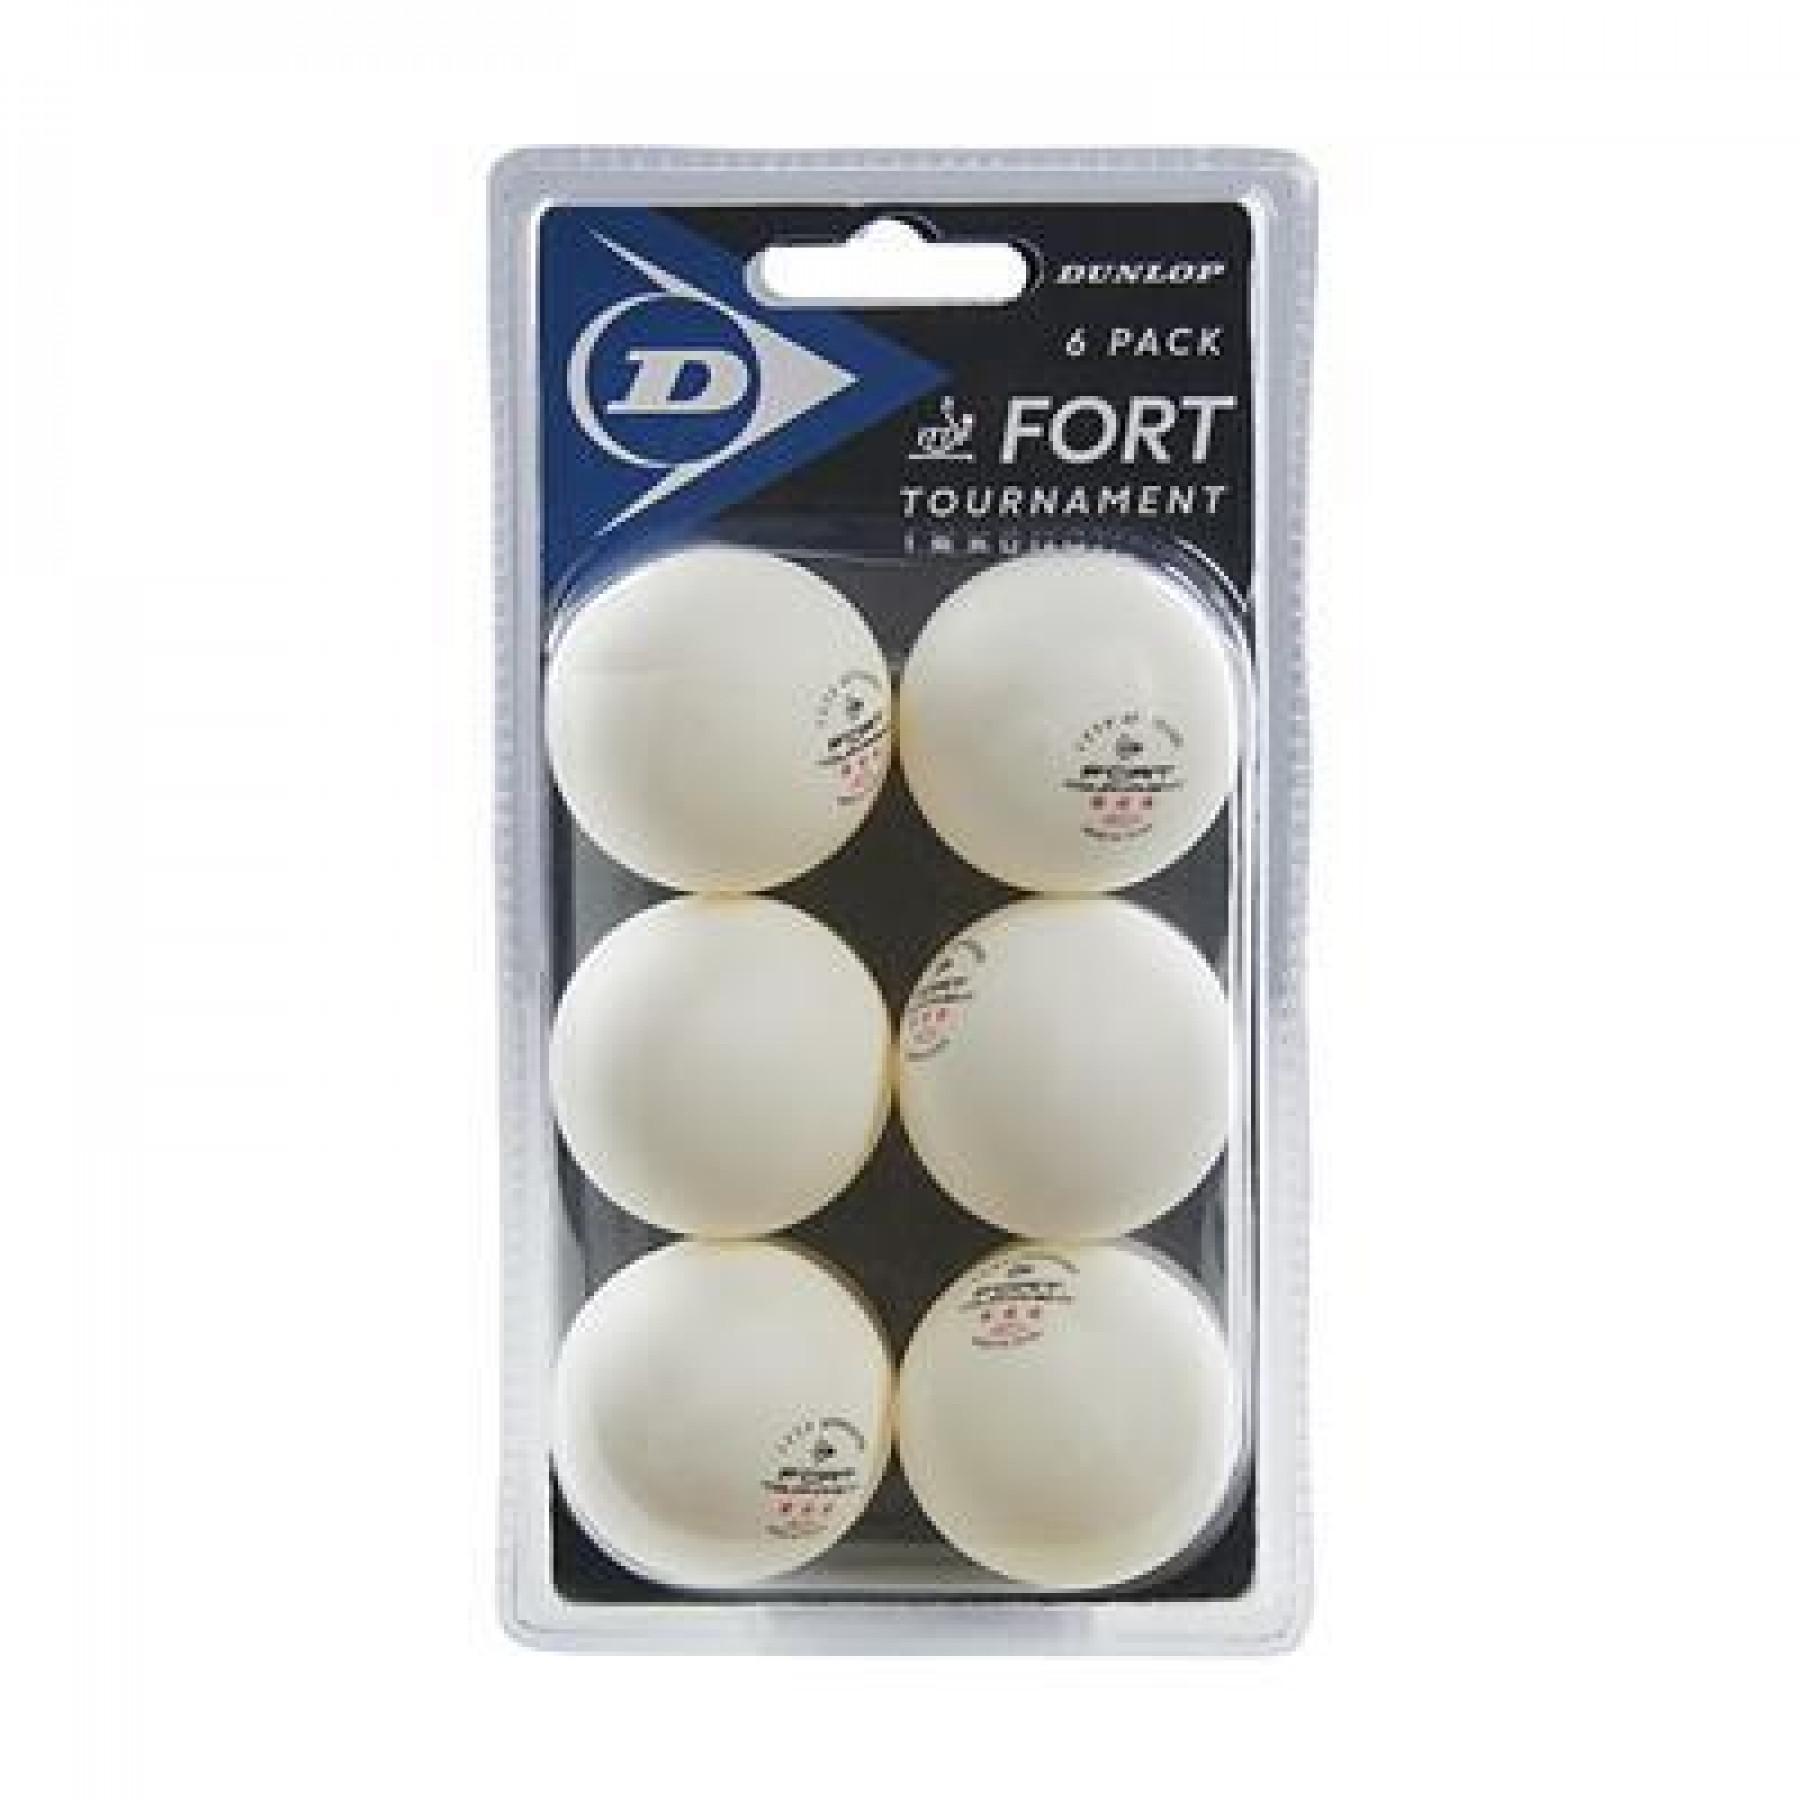 Set van 6 tafeltennisballen Dunlop 40+ fort tournament